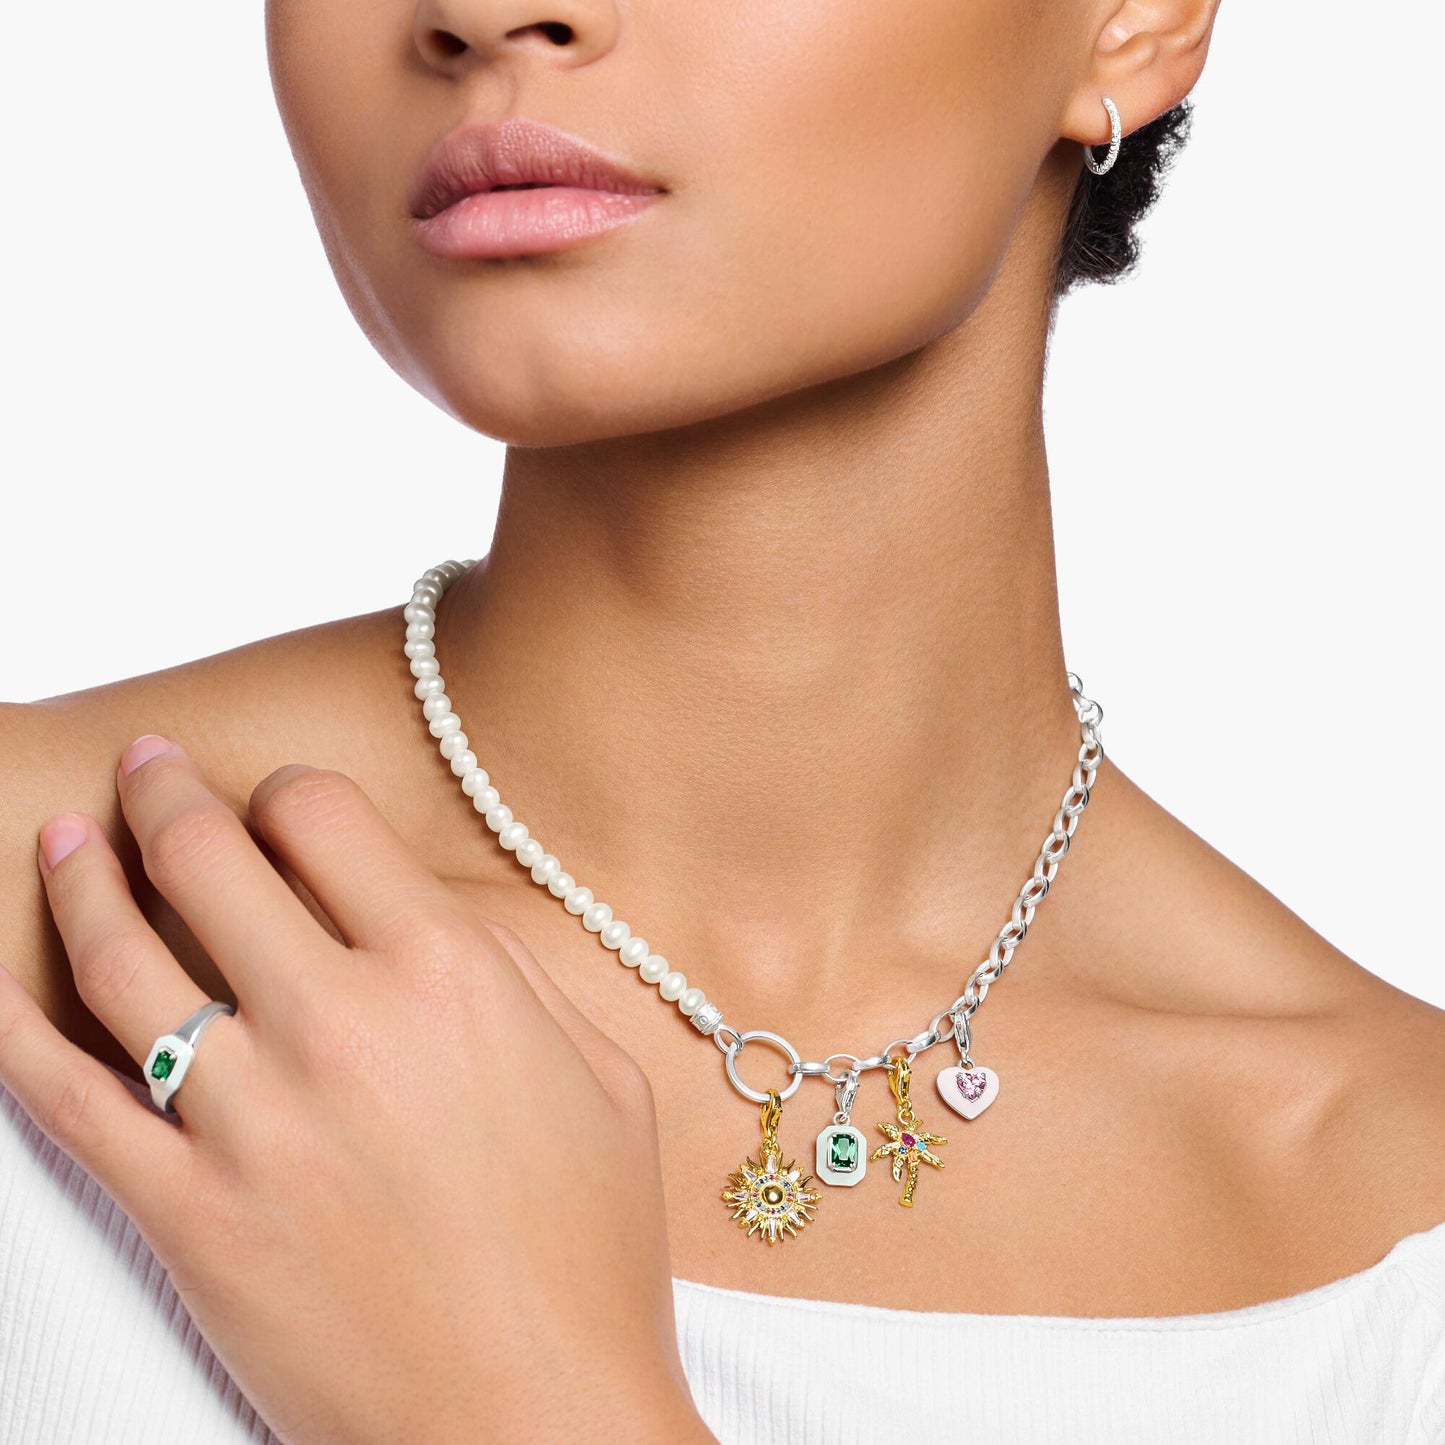 THOMAS SABO - Charm-Kette mit weißen Perlen und Kettengliedern Silber